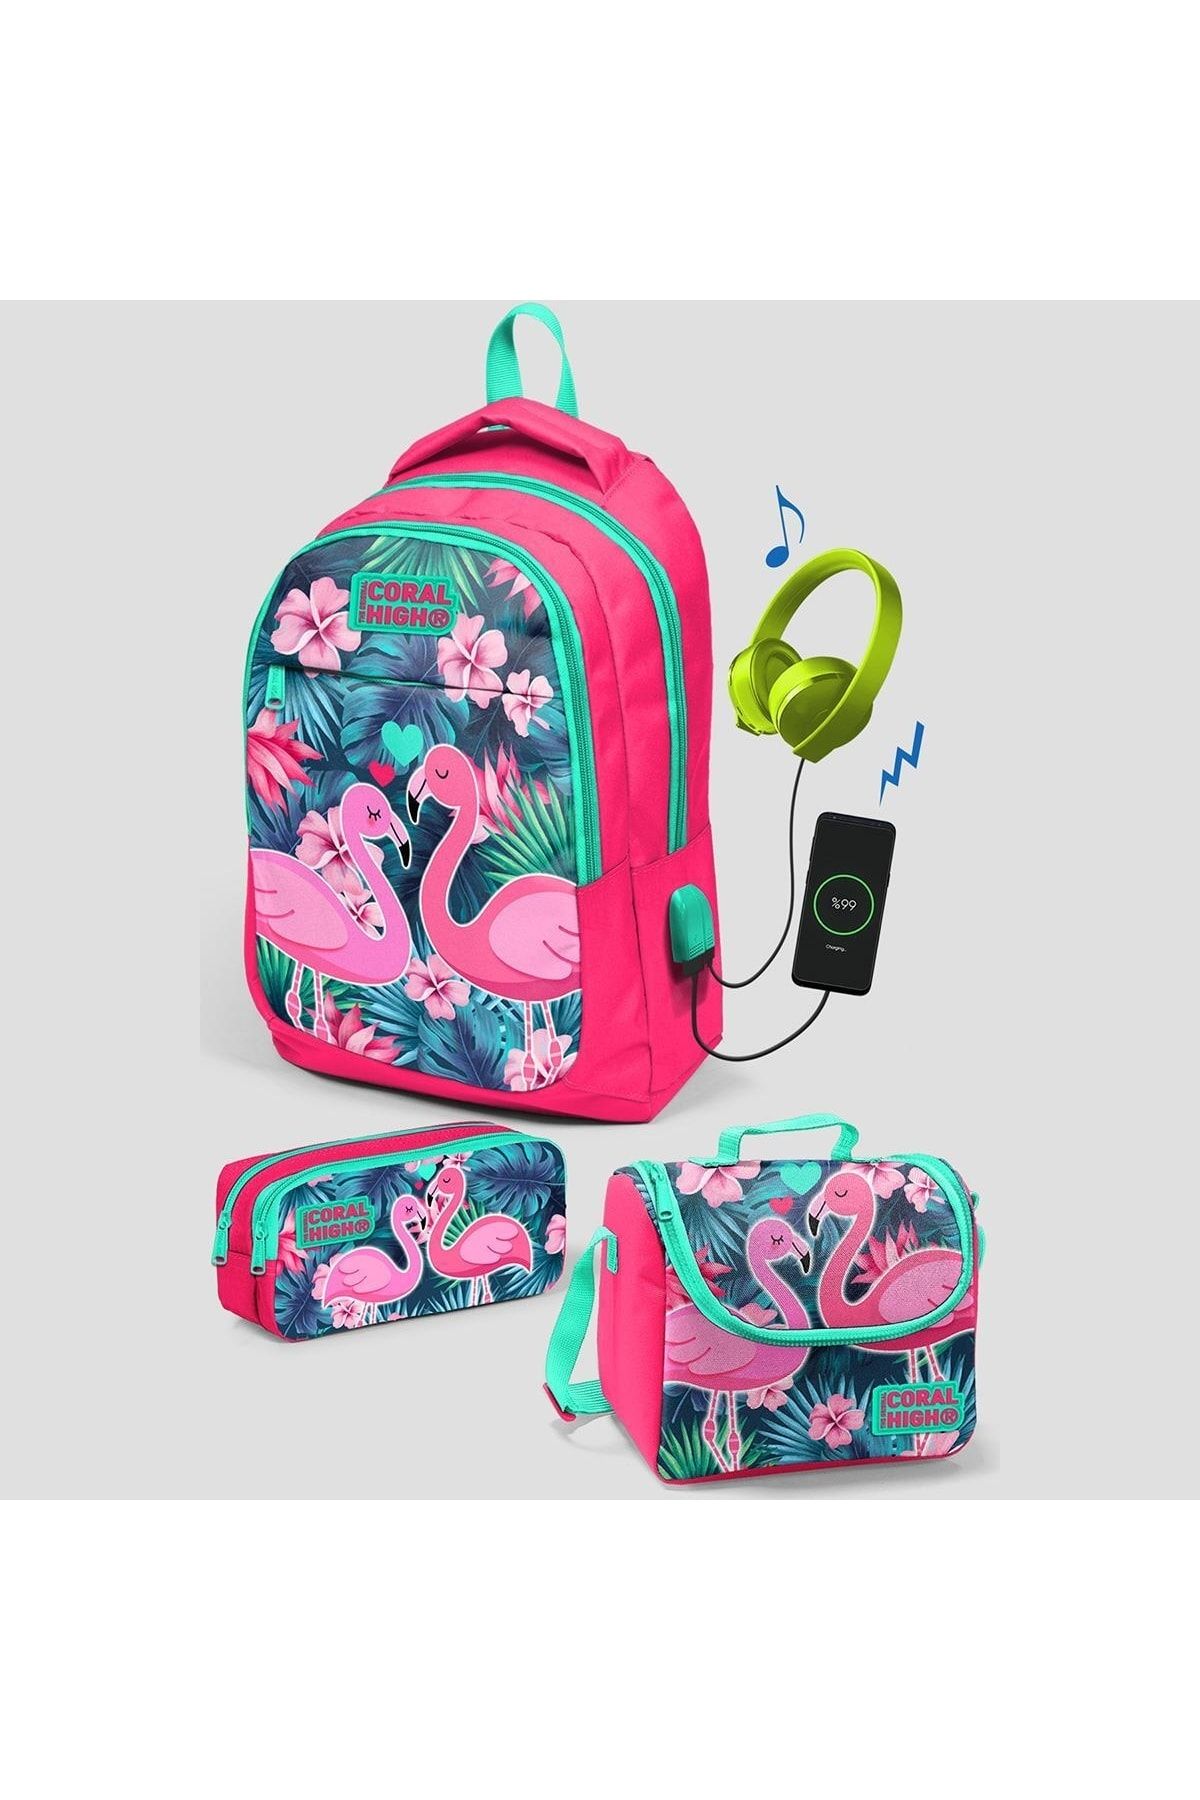 Coral High Kids Neon Mercan Su Yeşili Flamingo Desenli Üç Bölmeli Usb Şarjlı Kulaklık Çıkışlı Okul S